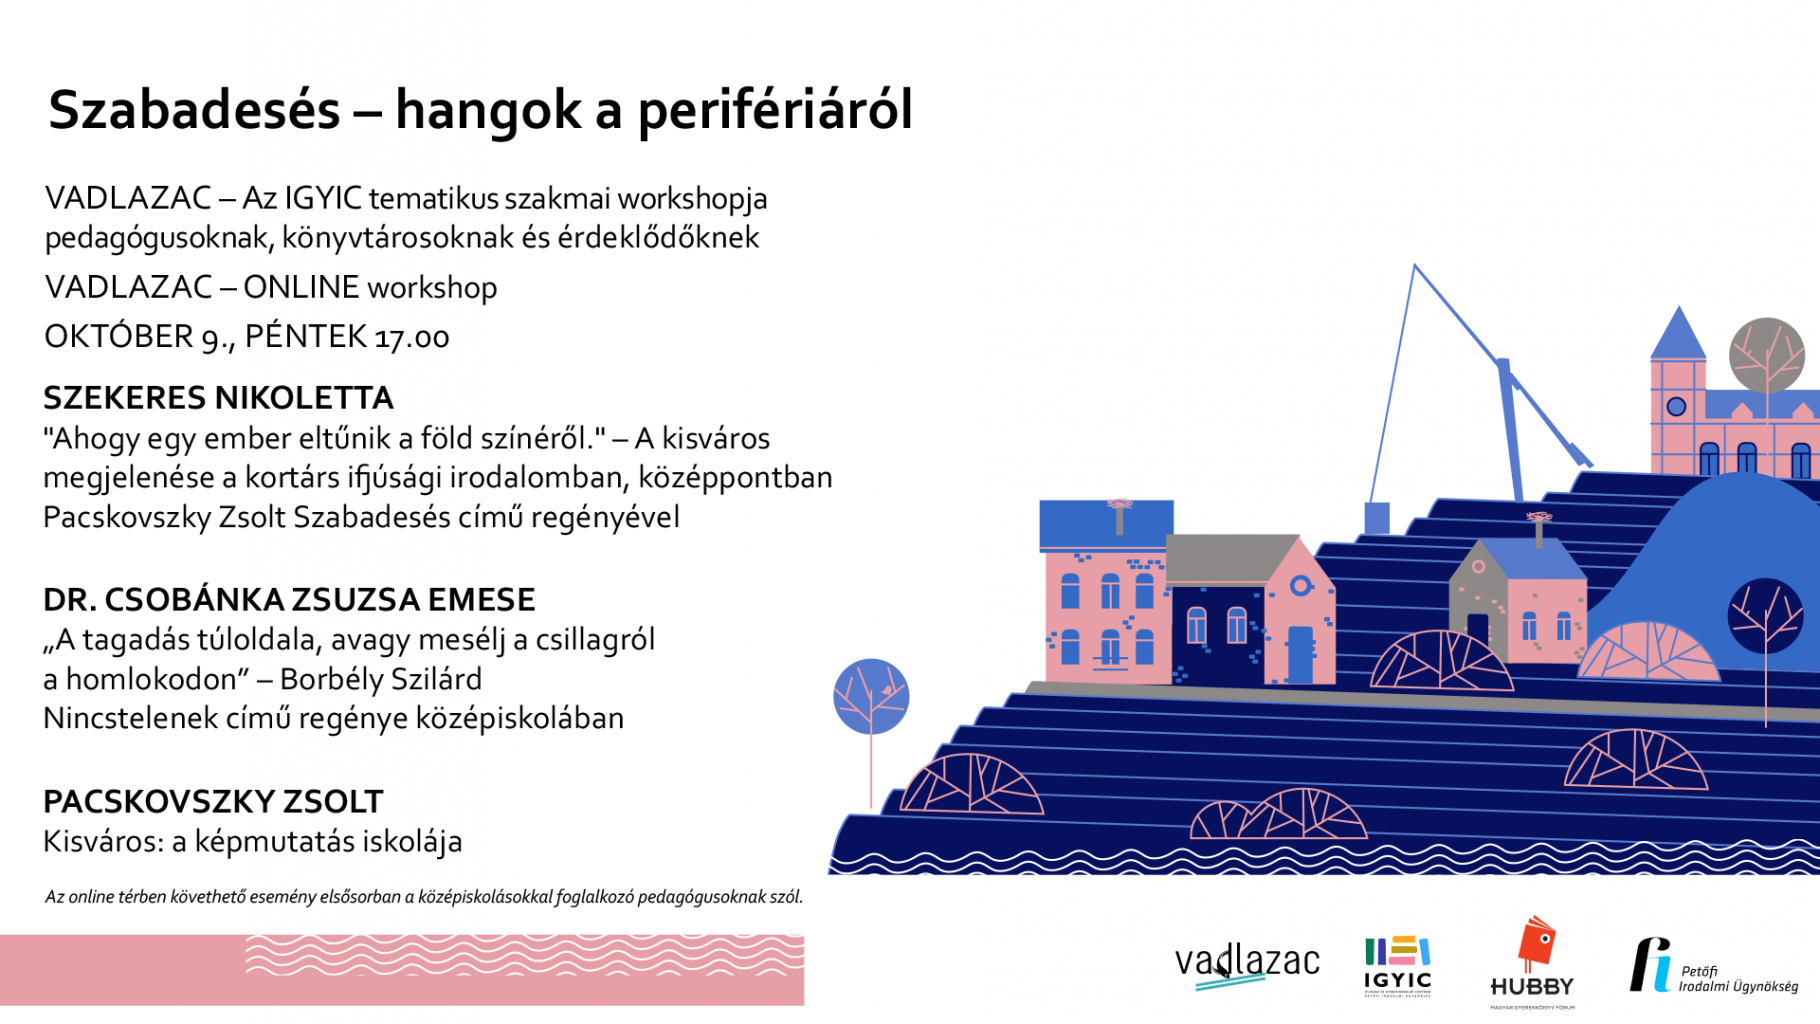 IGYIC-A Vadlazac-workshop pénteki eseményének borítóképe